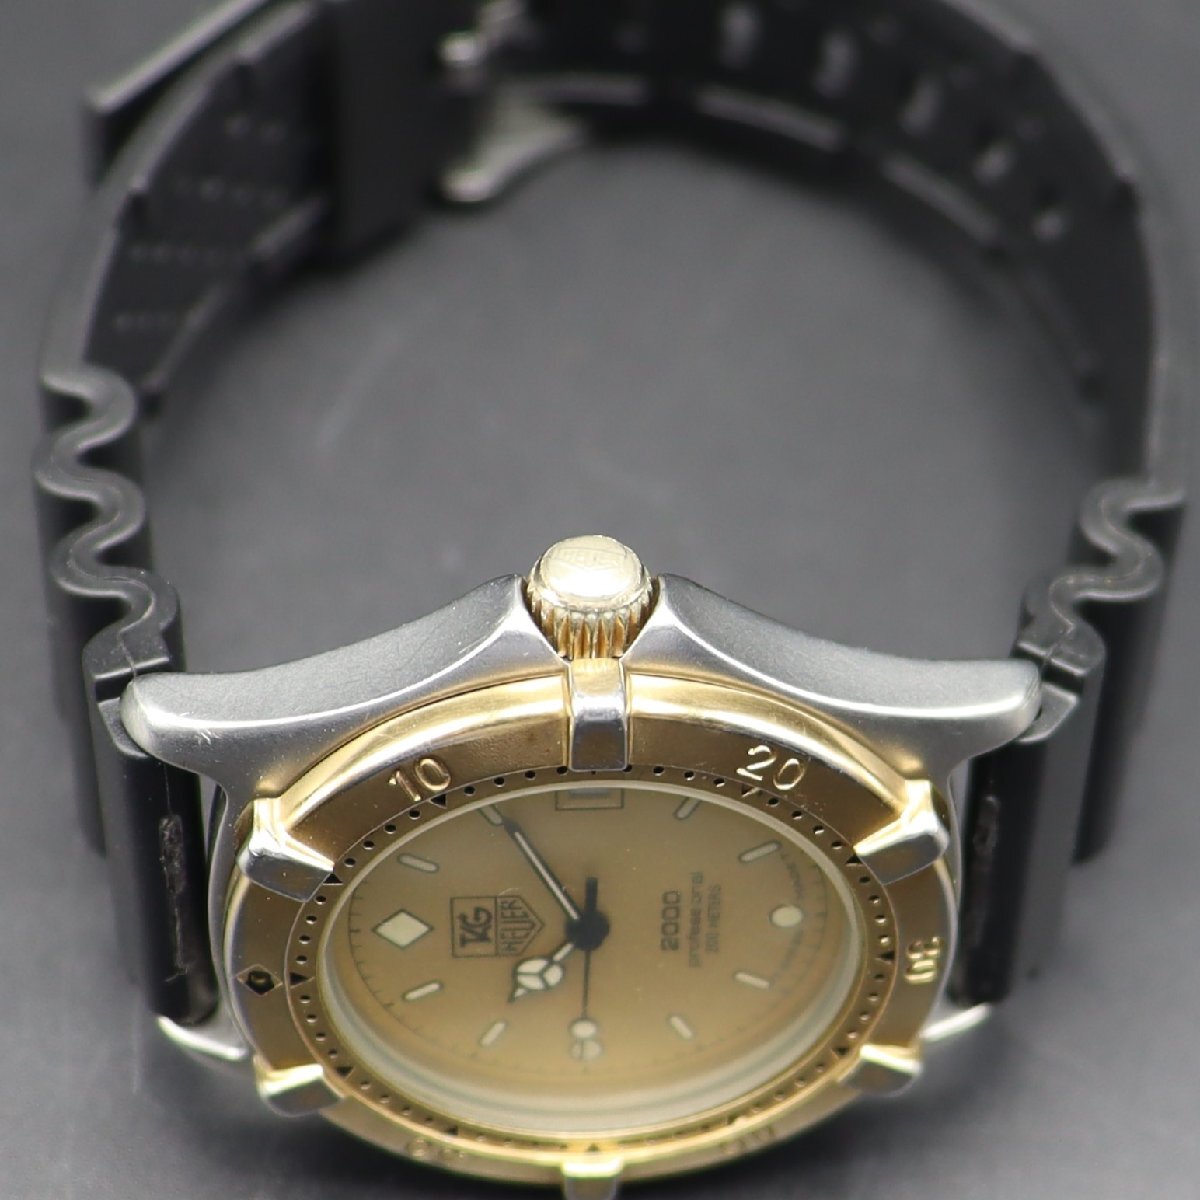 TAG HEUER タグホイヤー プロフェッショナル 2000 クォーツ 200M防水 964.013 デイト コンビカラー スイス 新品ラバーベルト メンズ腕時計の画像6